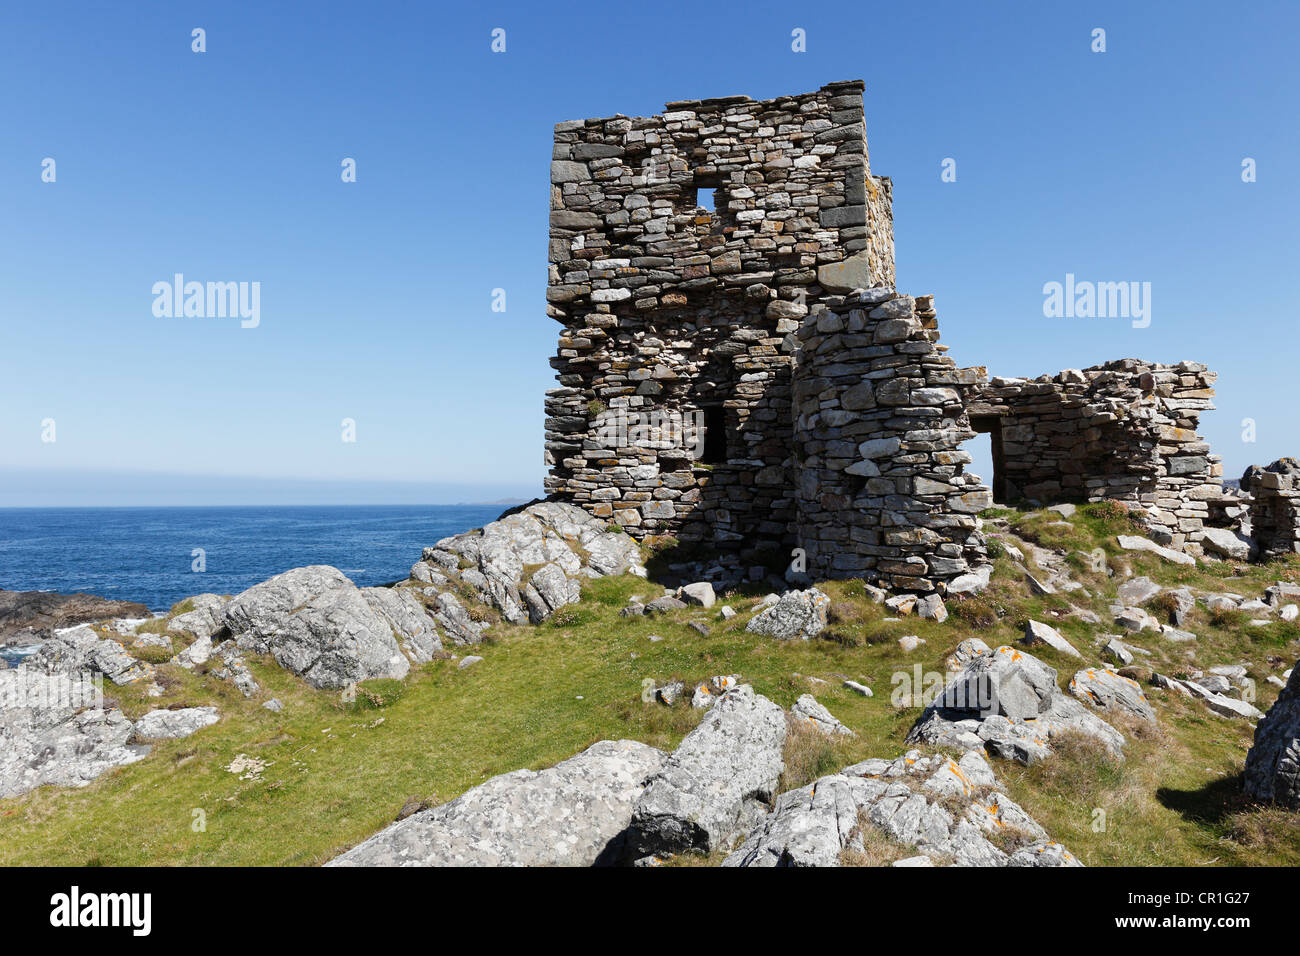 Ruines du château, à l'île de Carrickbraghey Doagh, péninsule d'Inishowen, County Donegal, Ireland, British Isles, Europe Banque D'Images